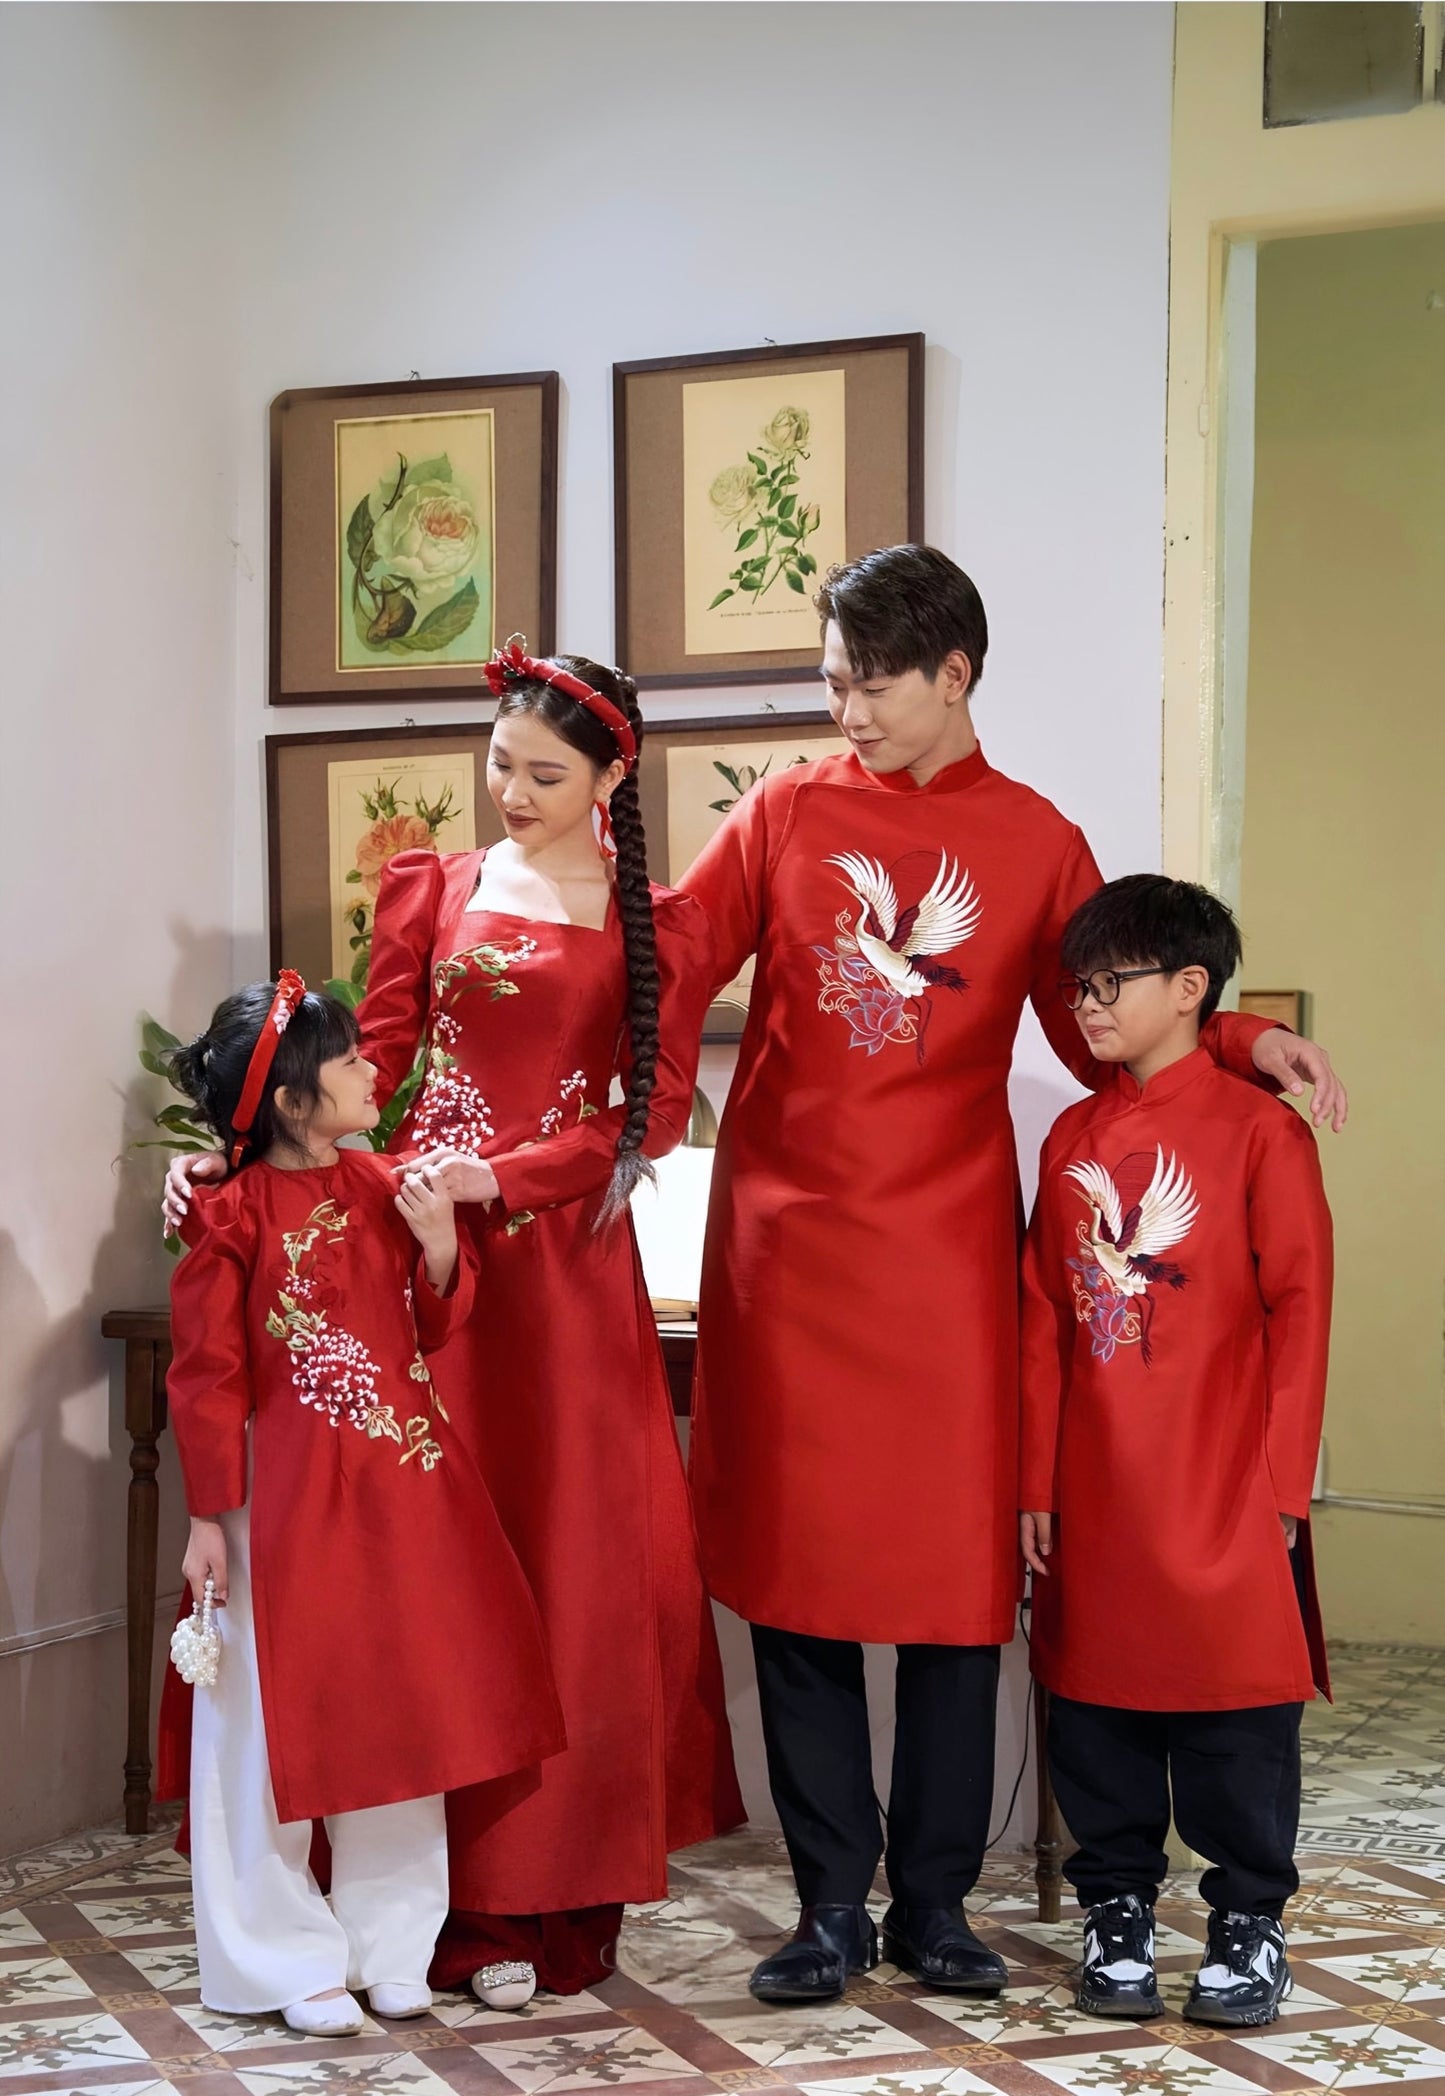 730 - Men’s Áo Dài Tân Xuân Red (Family Ao Dai)